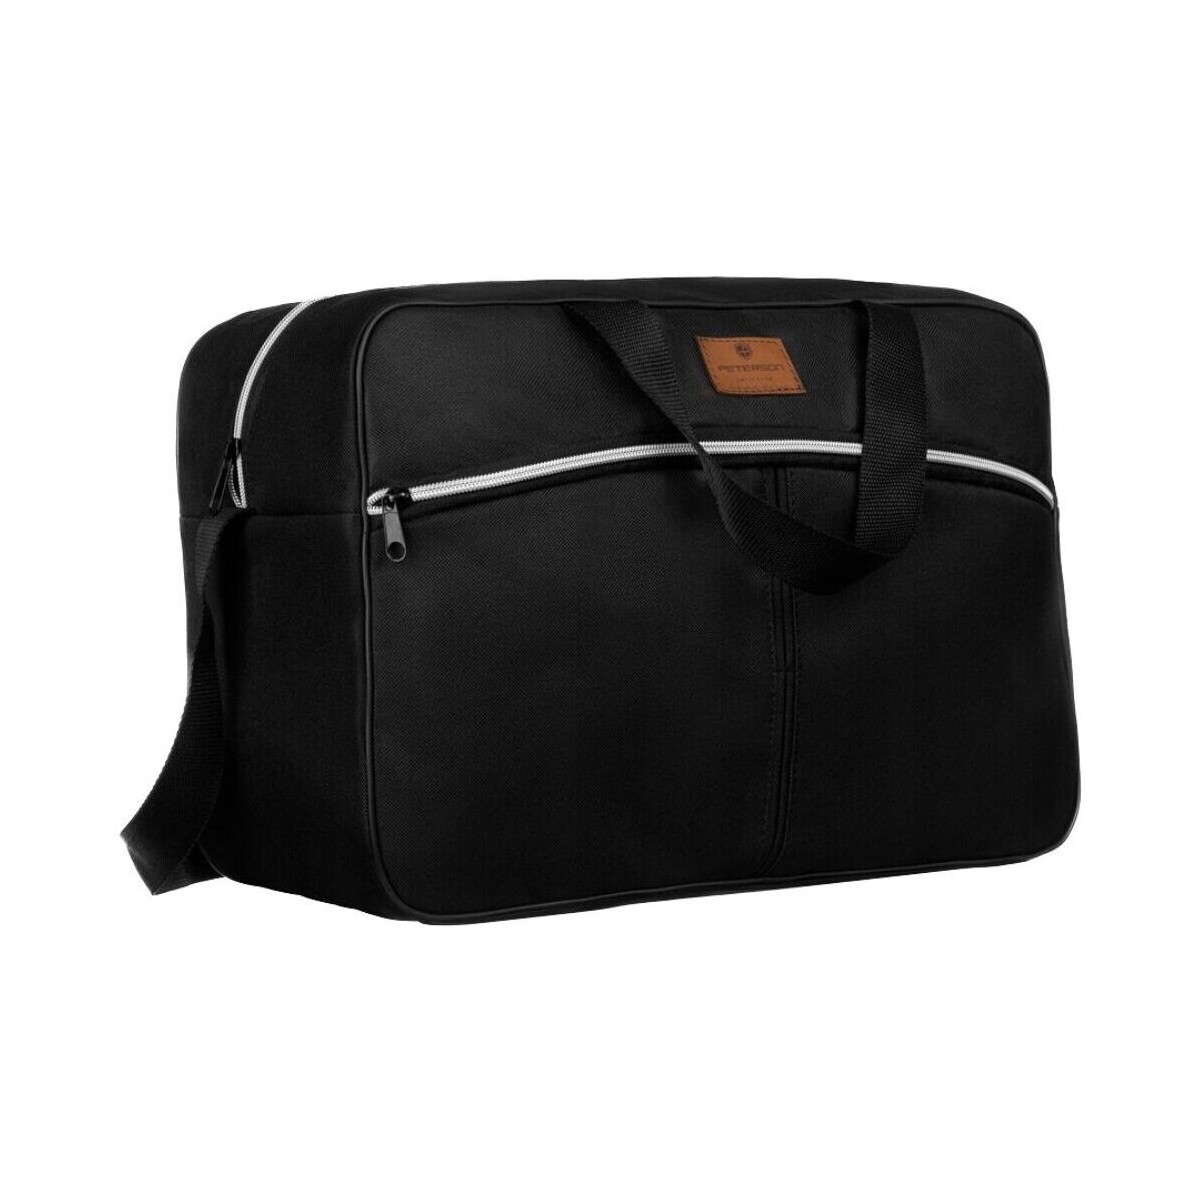 Taška Cestovní tašky Peterson Cestovní taška Gemos černo-stříbrná Černá